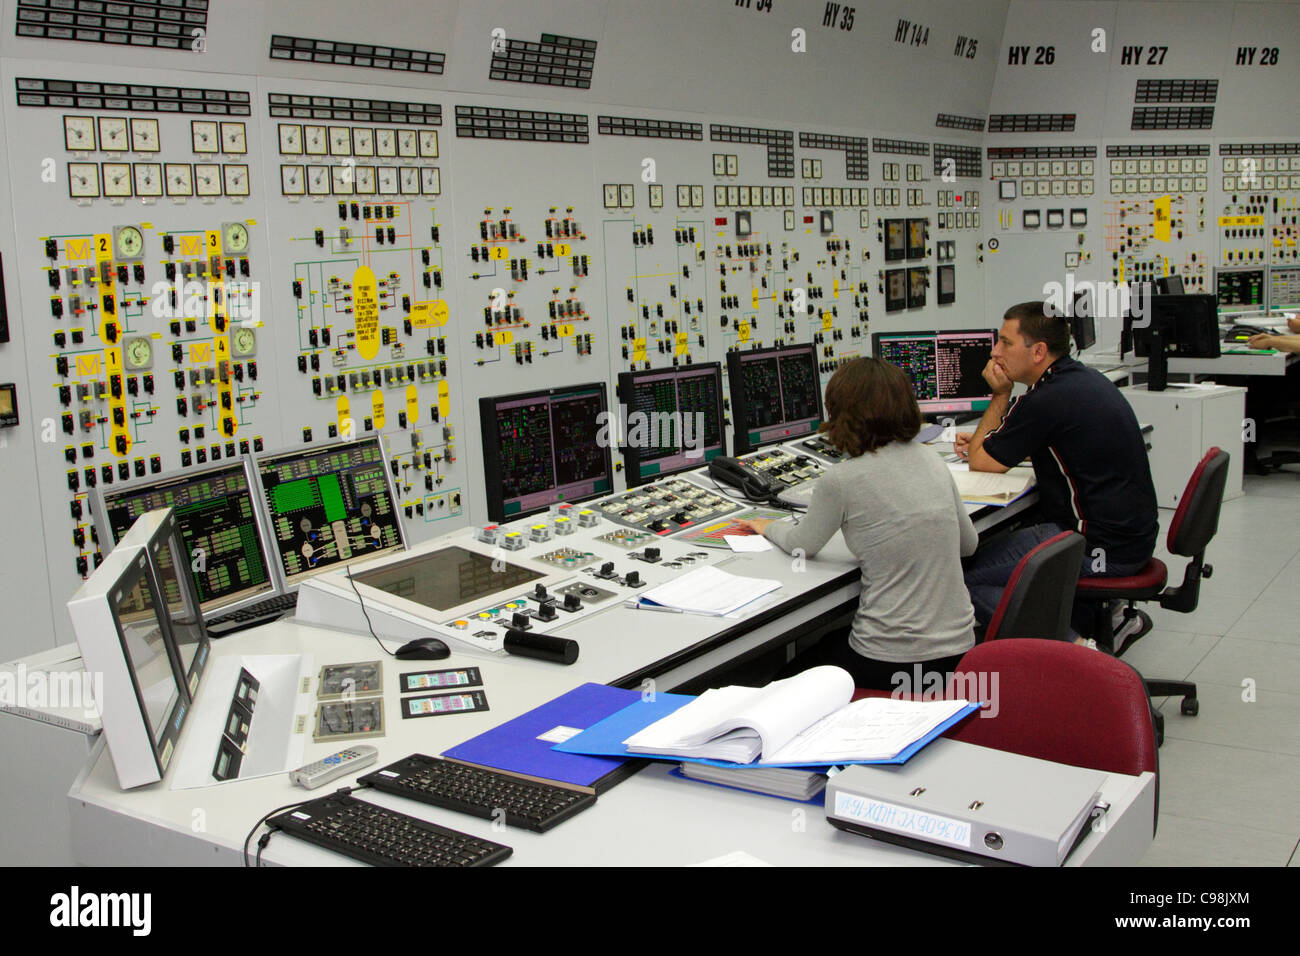 Sala de Control de la central nuclear de Kozloduy, Bulgaria, el personal detrás de pantallas, pared de diales de control Foto de stock